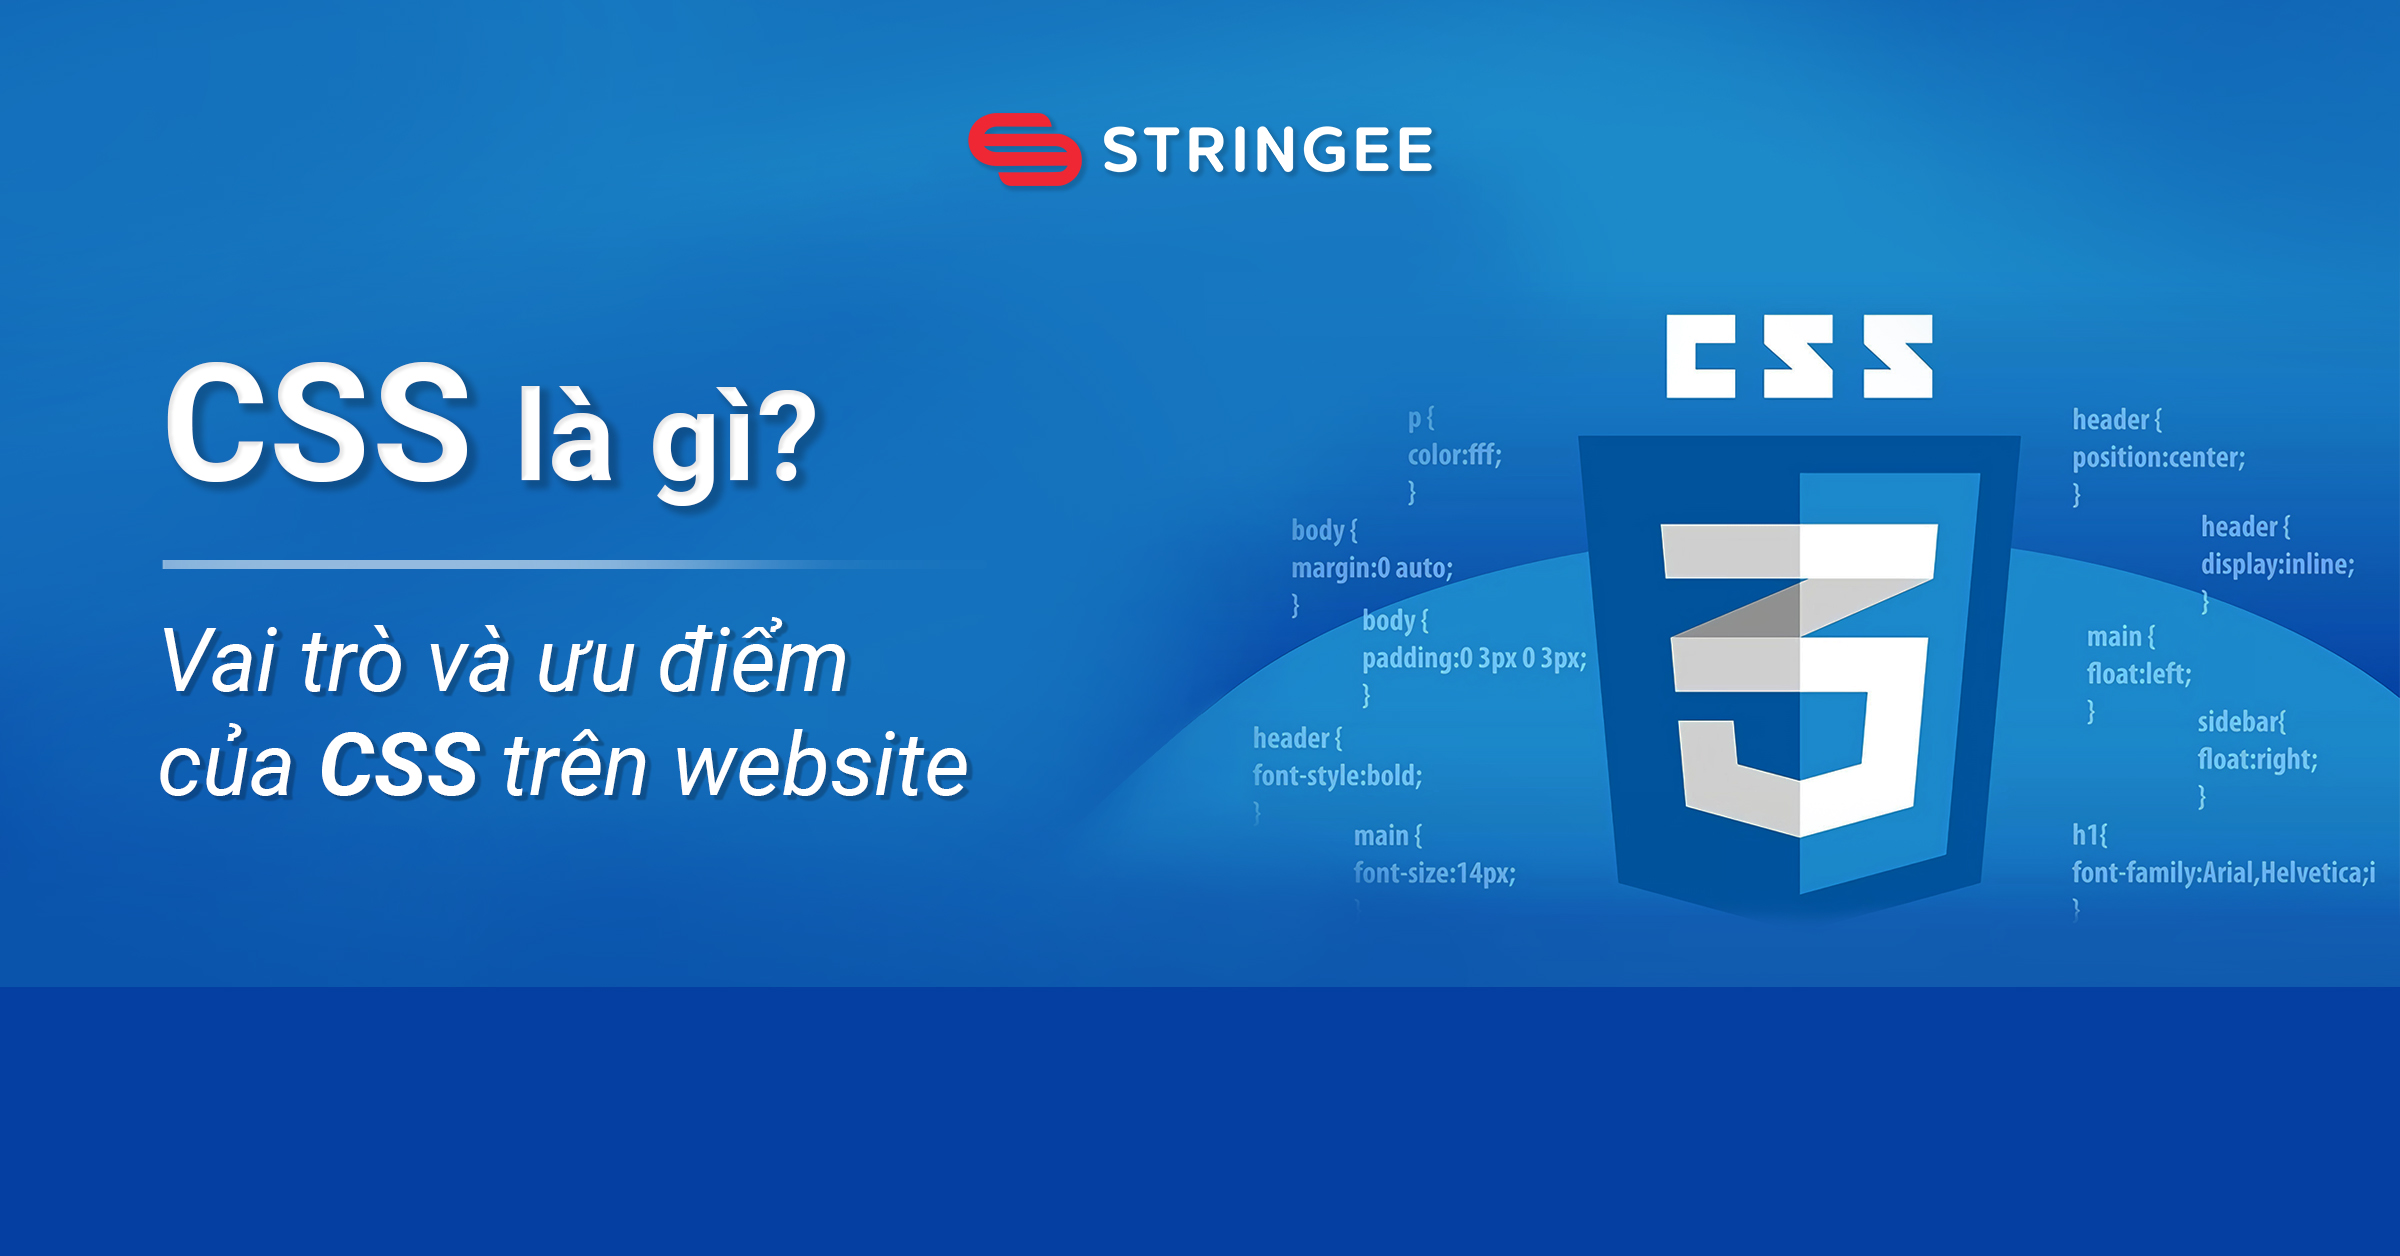 CSS là gì? Vai trò và ưu điểm của CSS trên website - Stringee